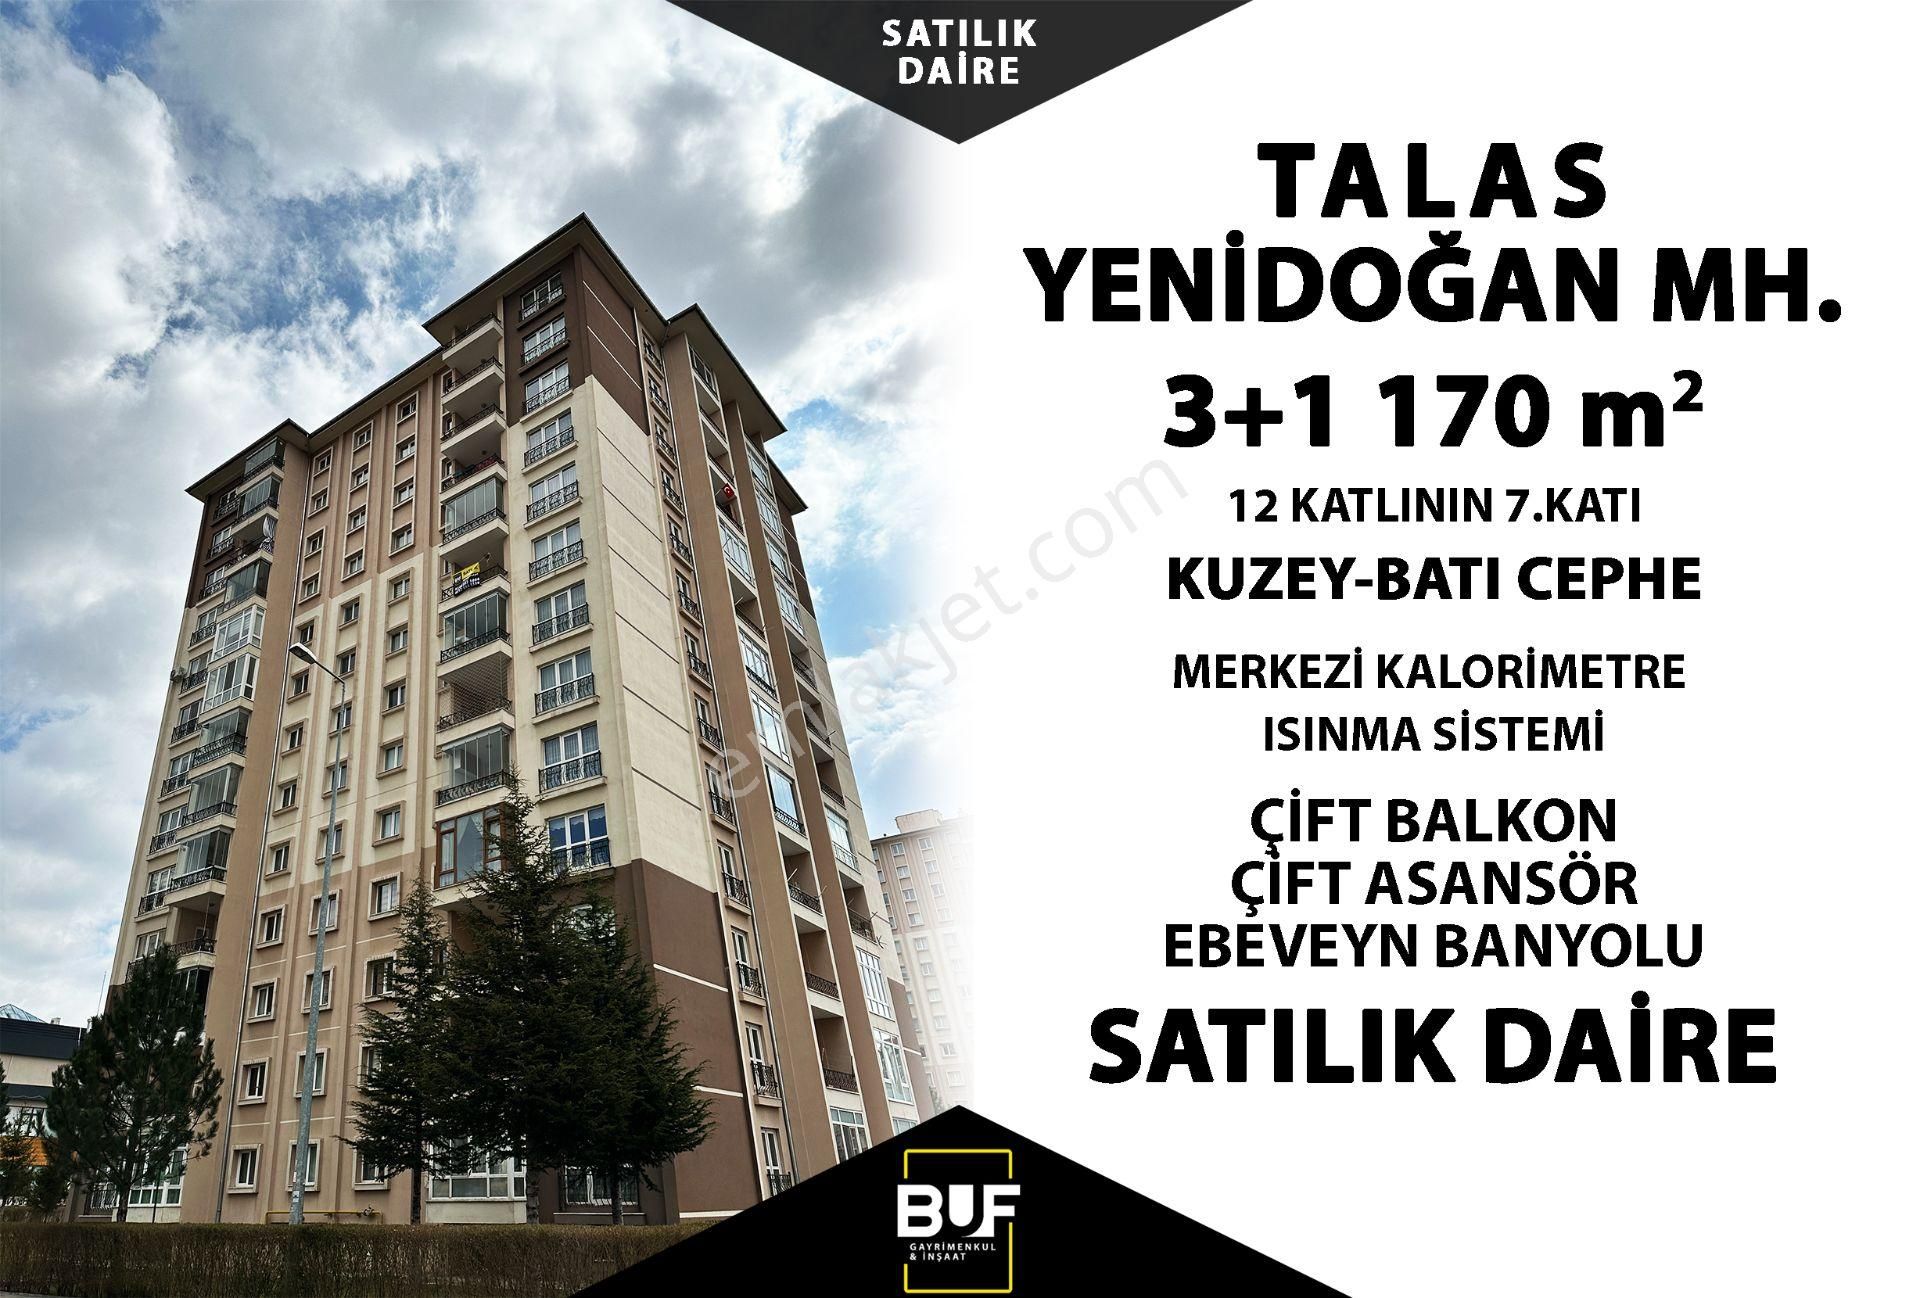 Talas Yenidoğan Satılık Daire  BUF GAYRİMENKUL'DEN TALAS TOKİ'DE BAKIMLI 170m2 3+1 SATILIK DAİRE